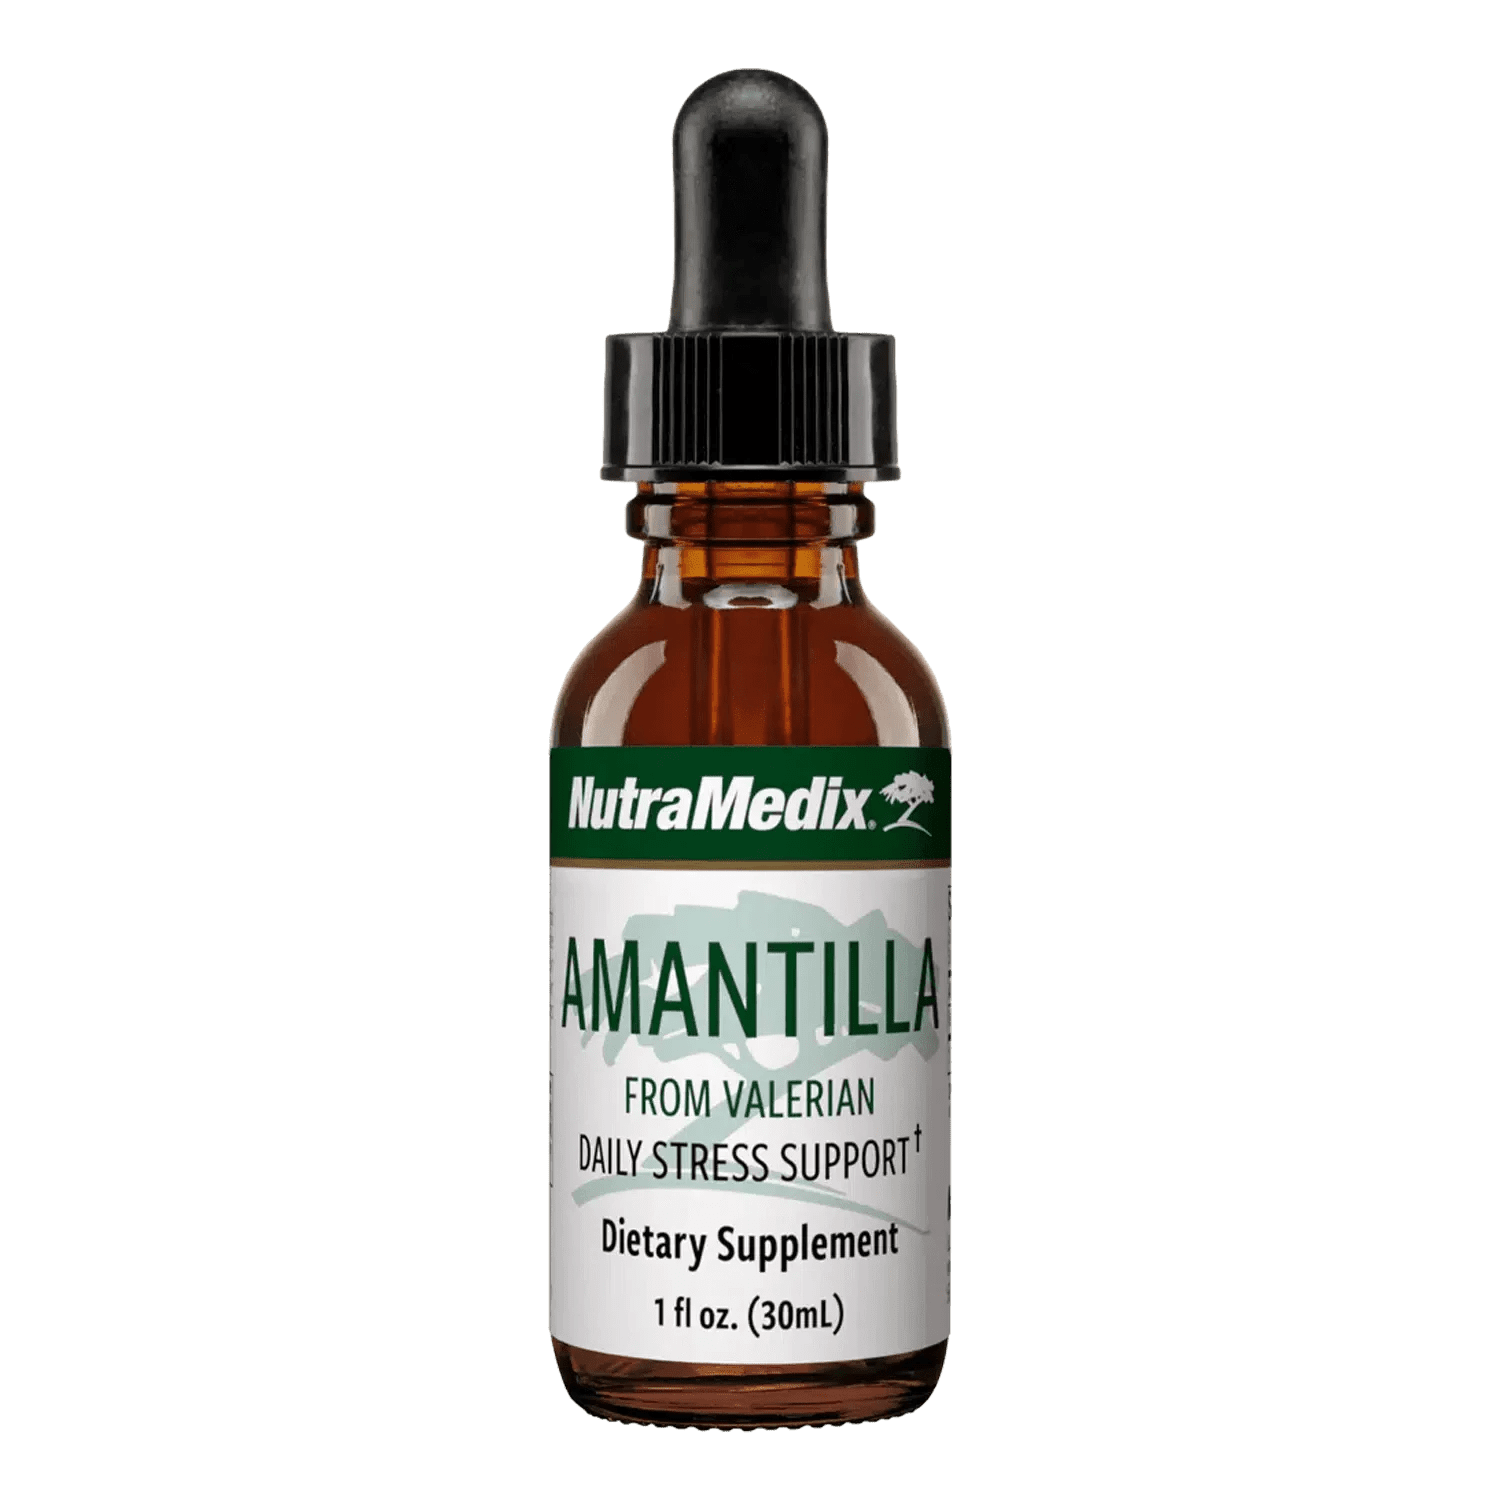 Amantilla - 1oz liquid supplement for stress support